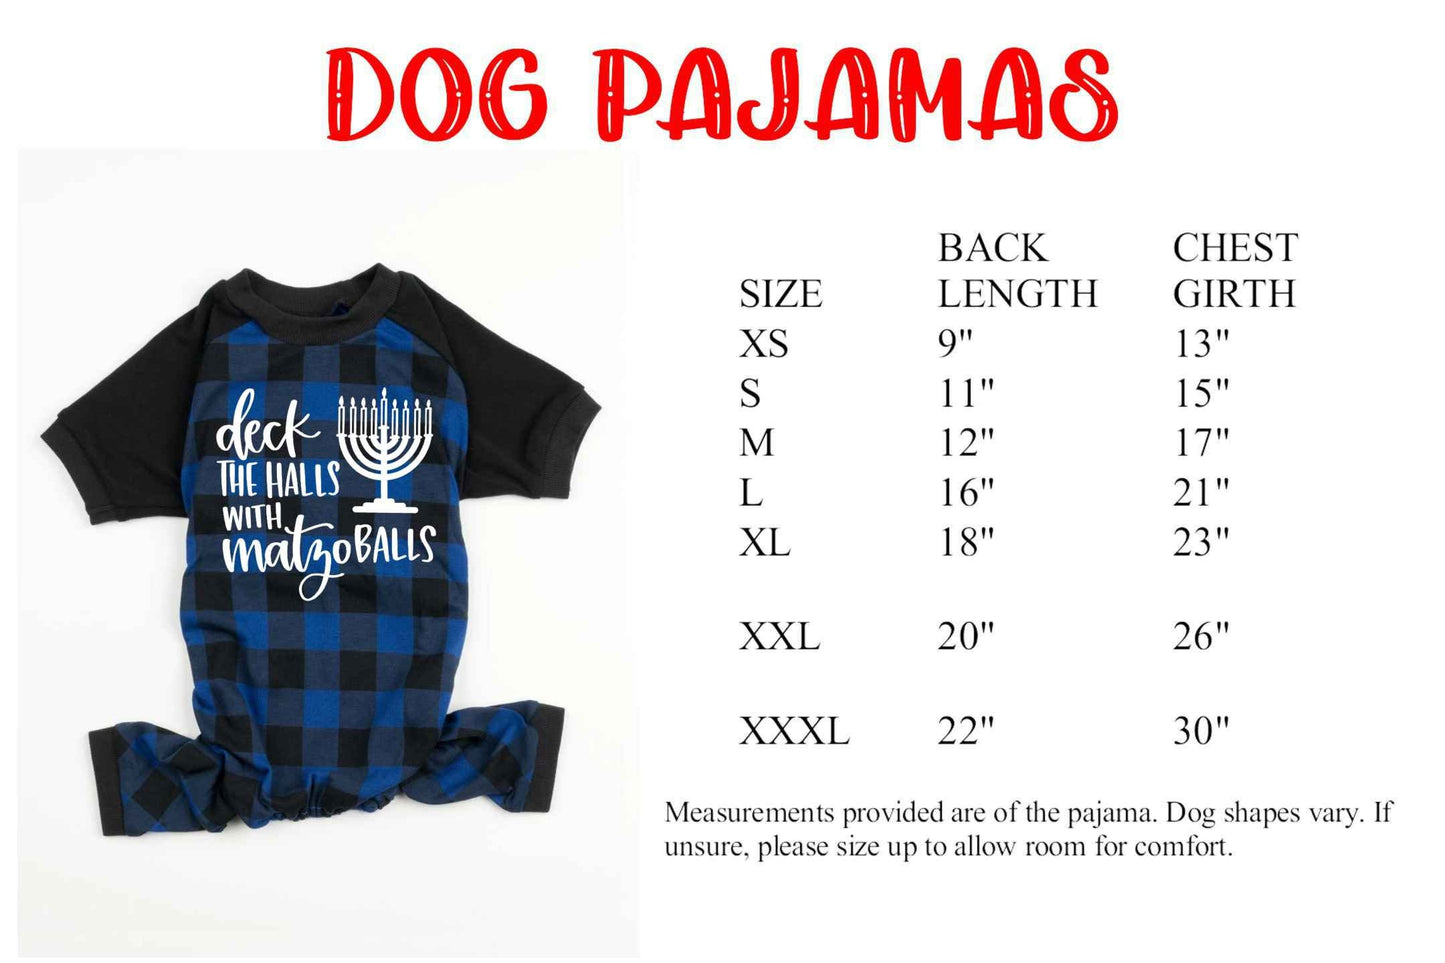 Deck the Halls with Matzo Balls Blue Plaid Family Chanukah Pajamas, hanukkah family pajamas - women's hanukkah jammies